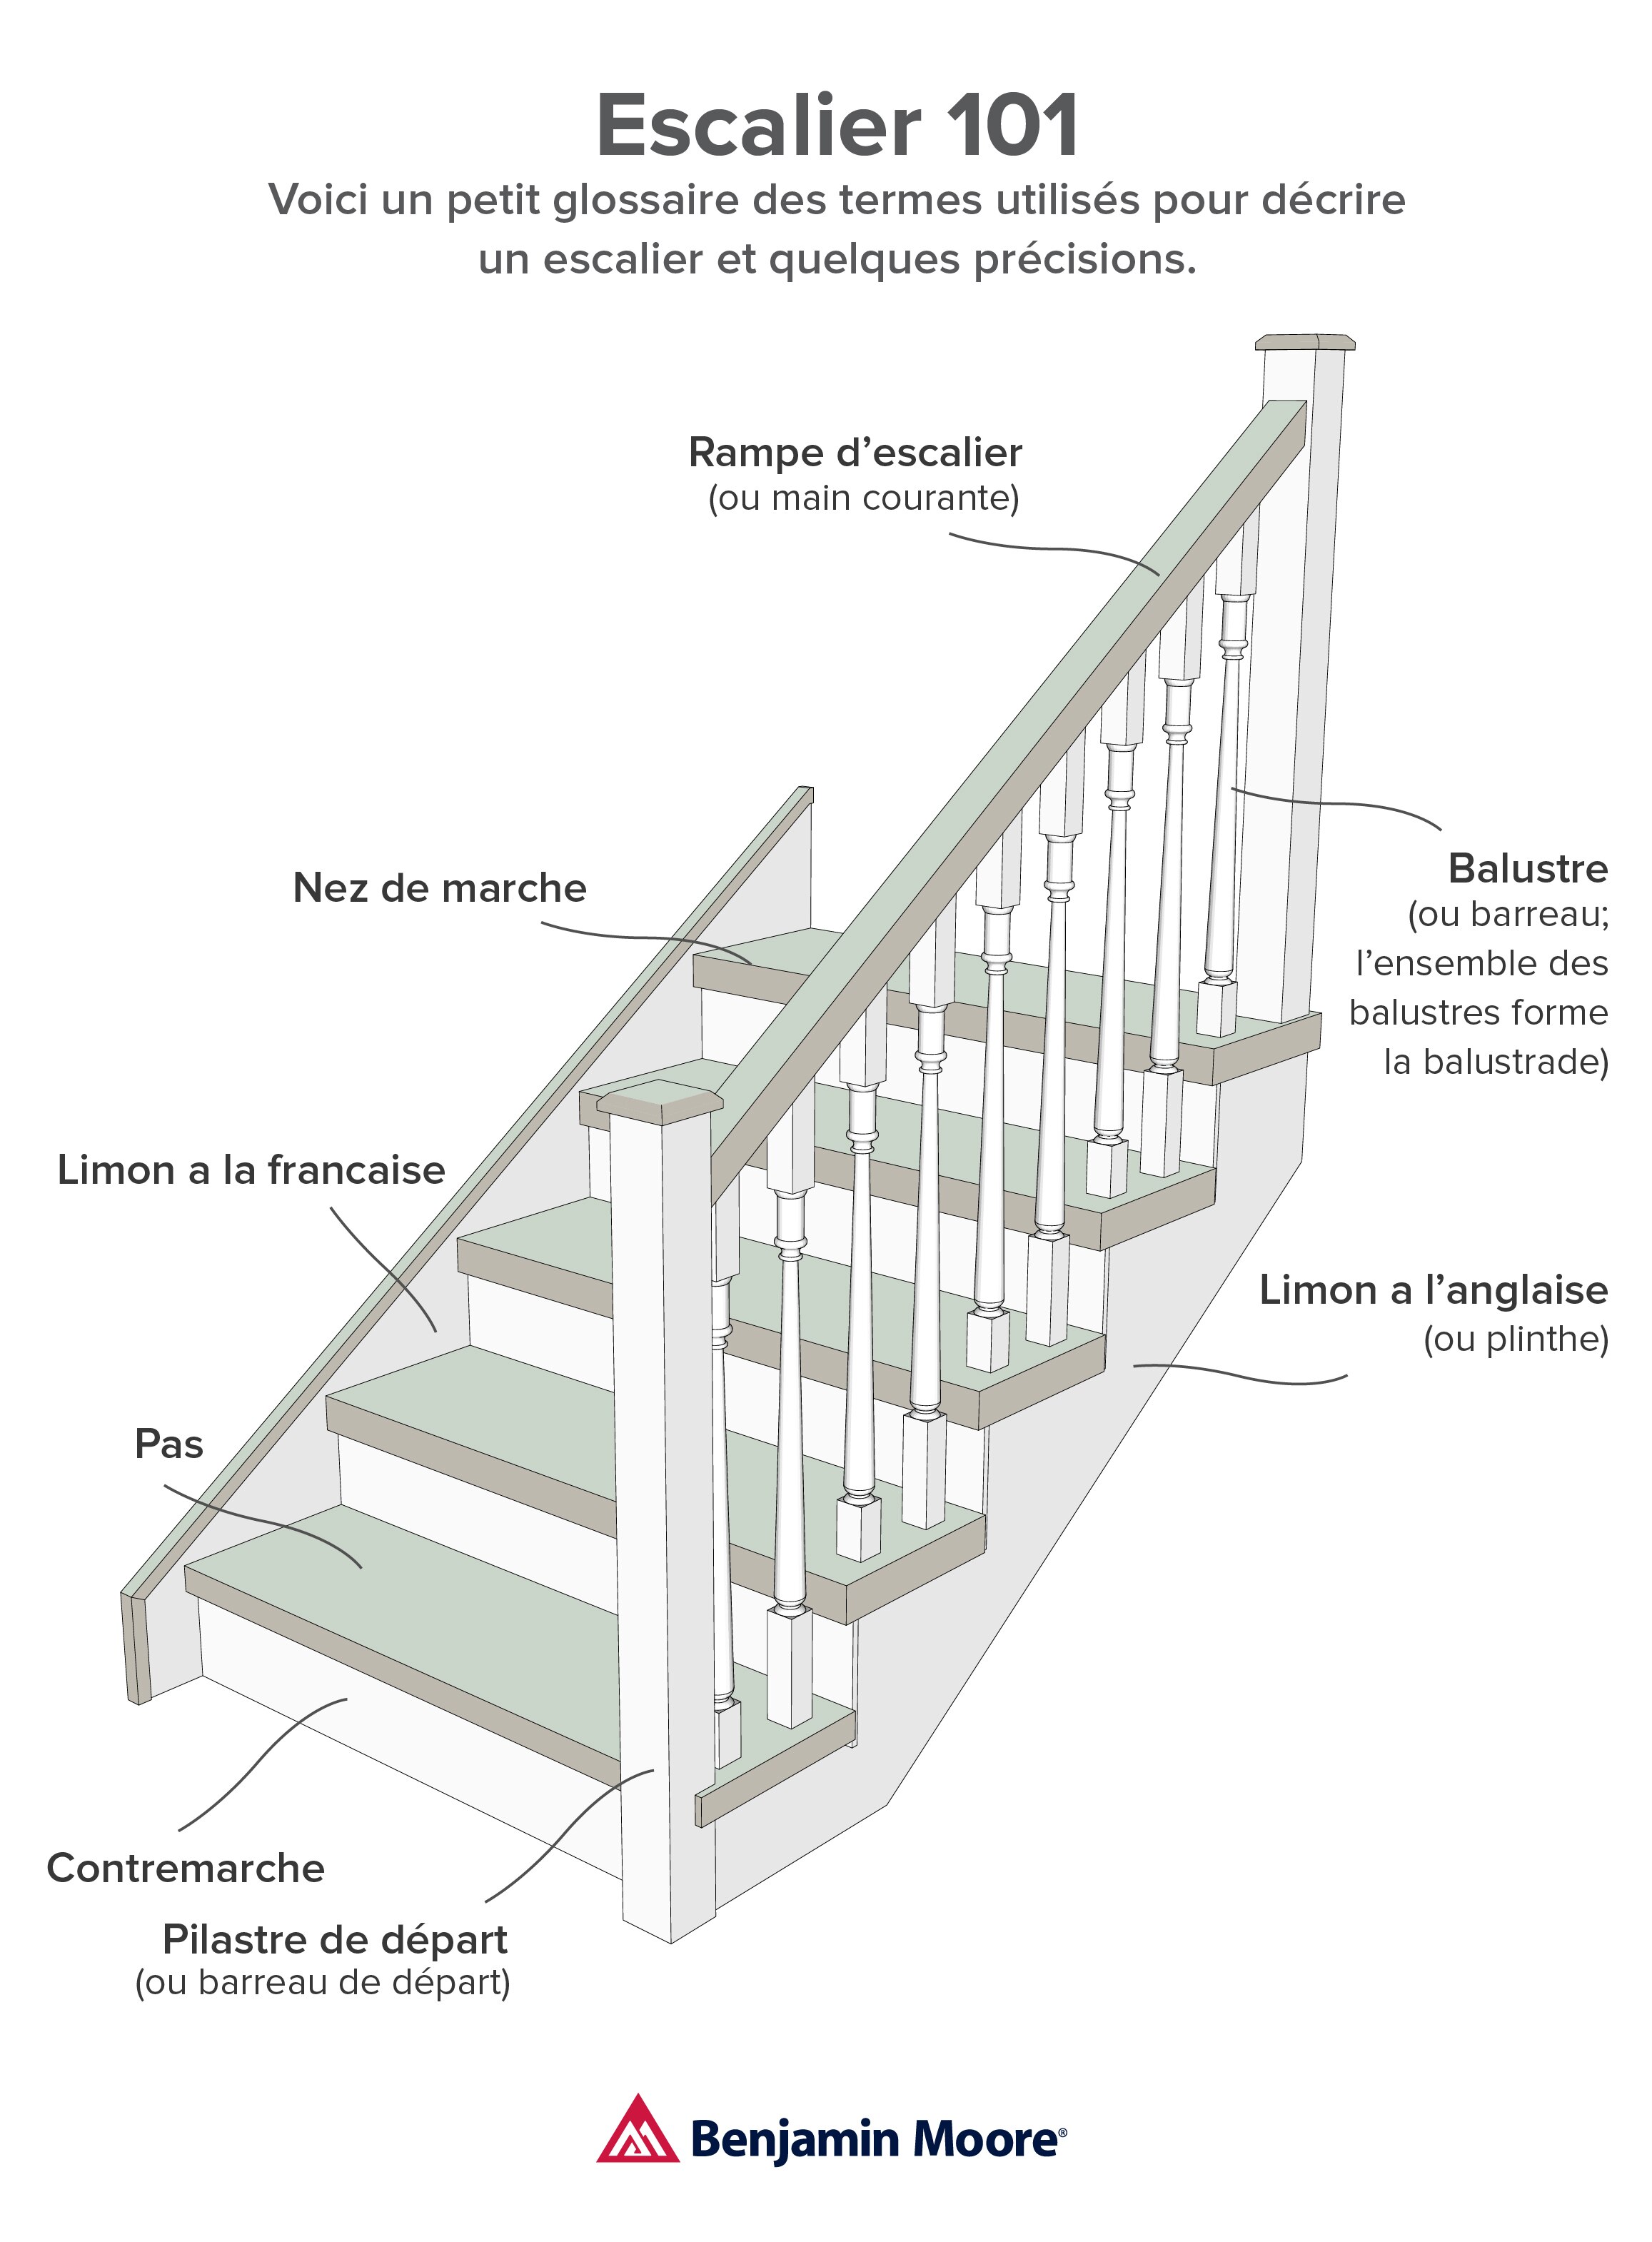 Illustration d’escalier 101.